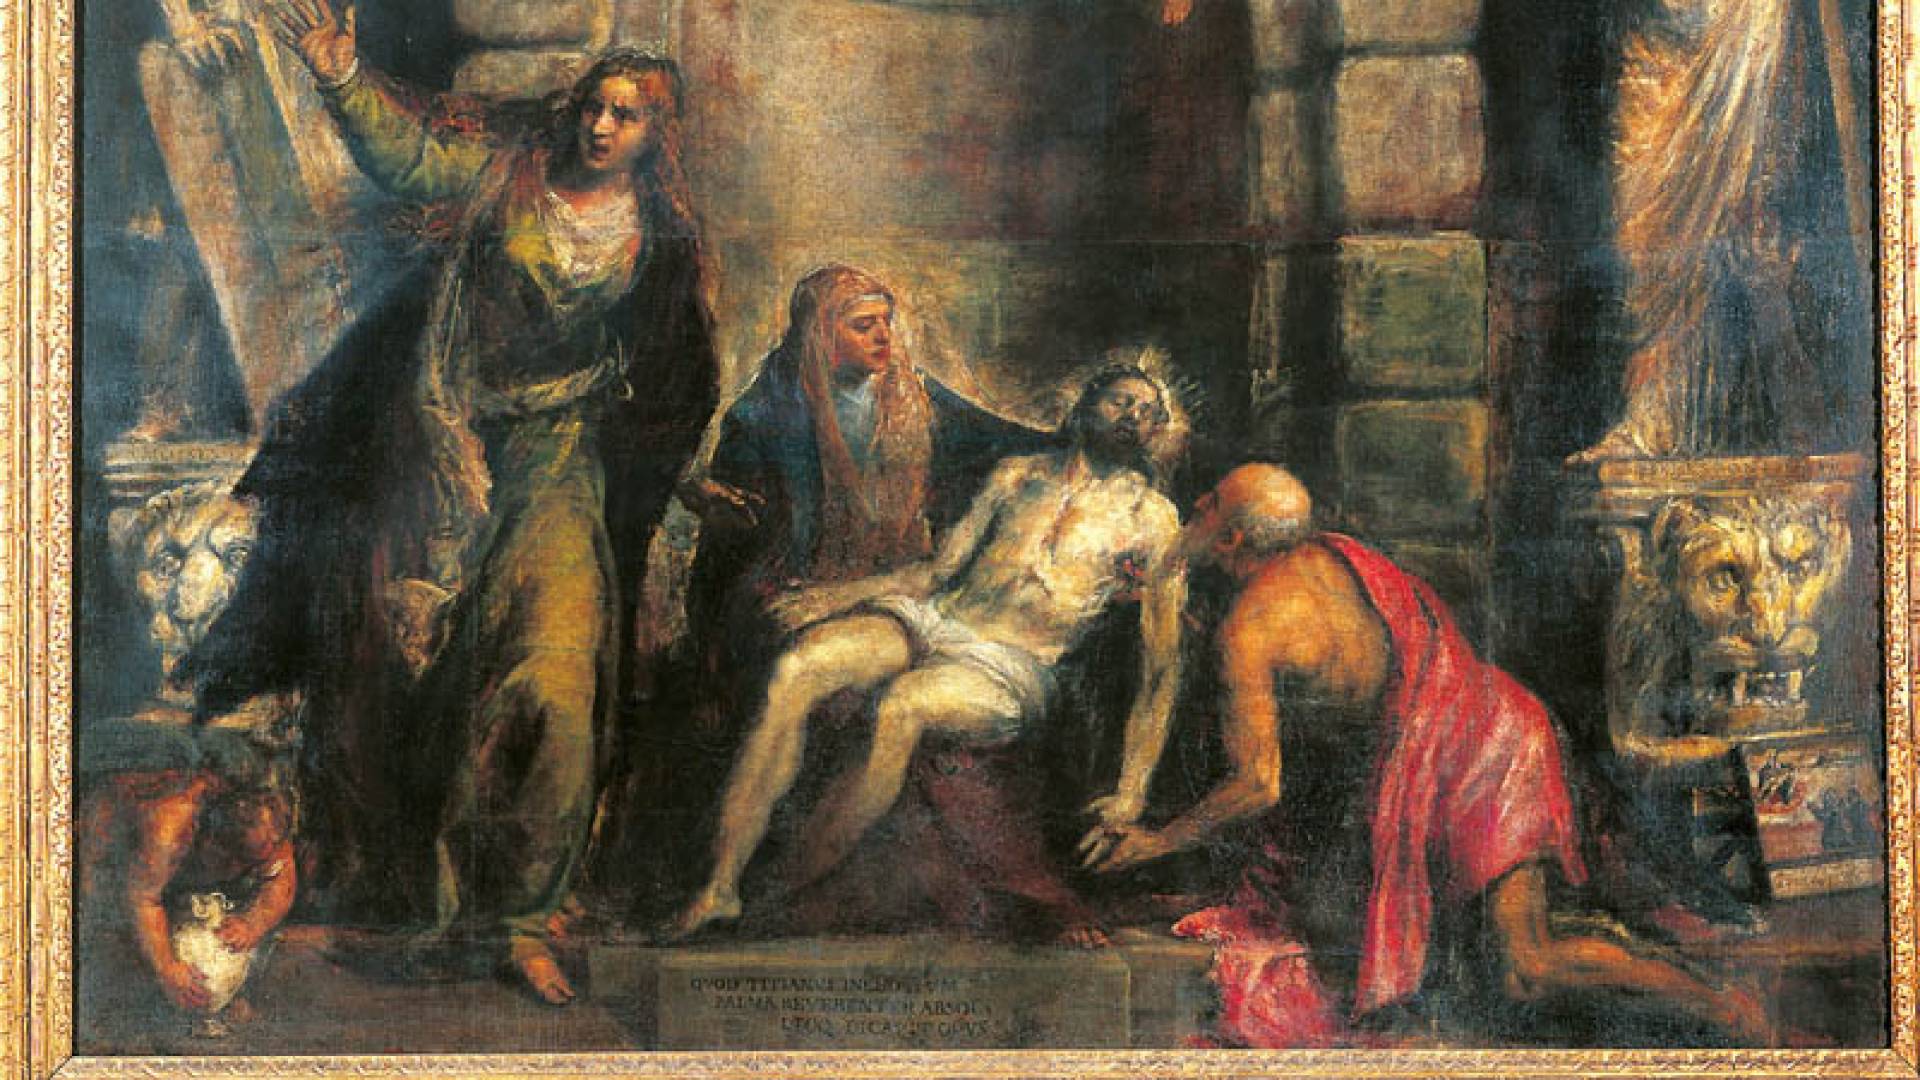 GALLERIE DELL'ACCADEMIA, La Pieta' - Tiziano